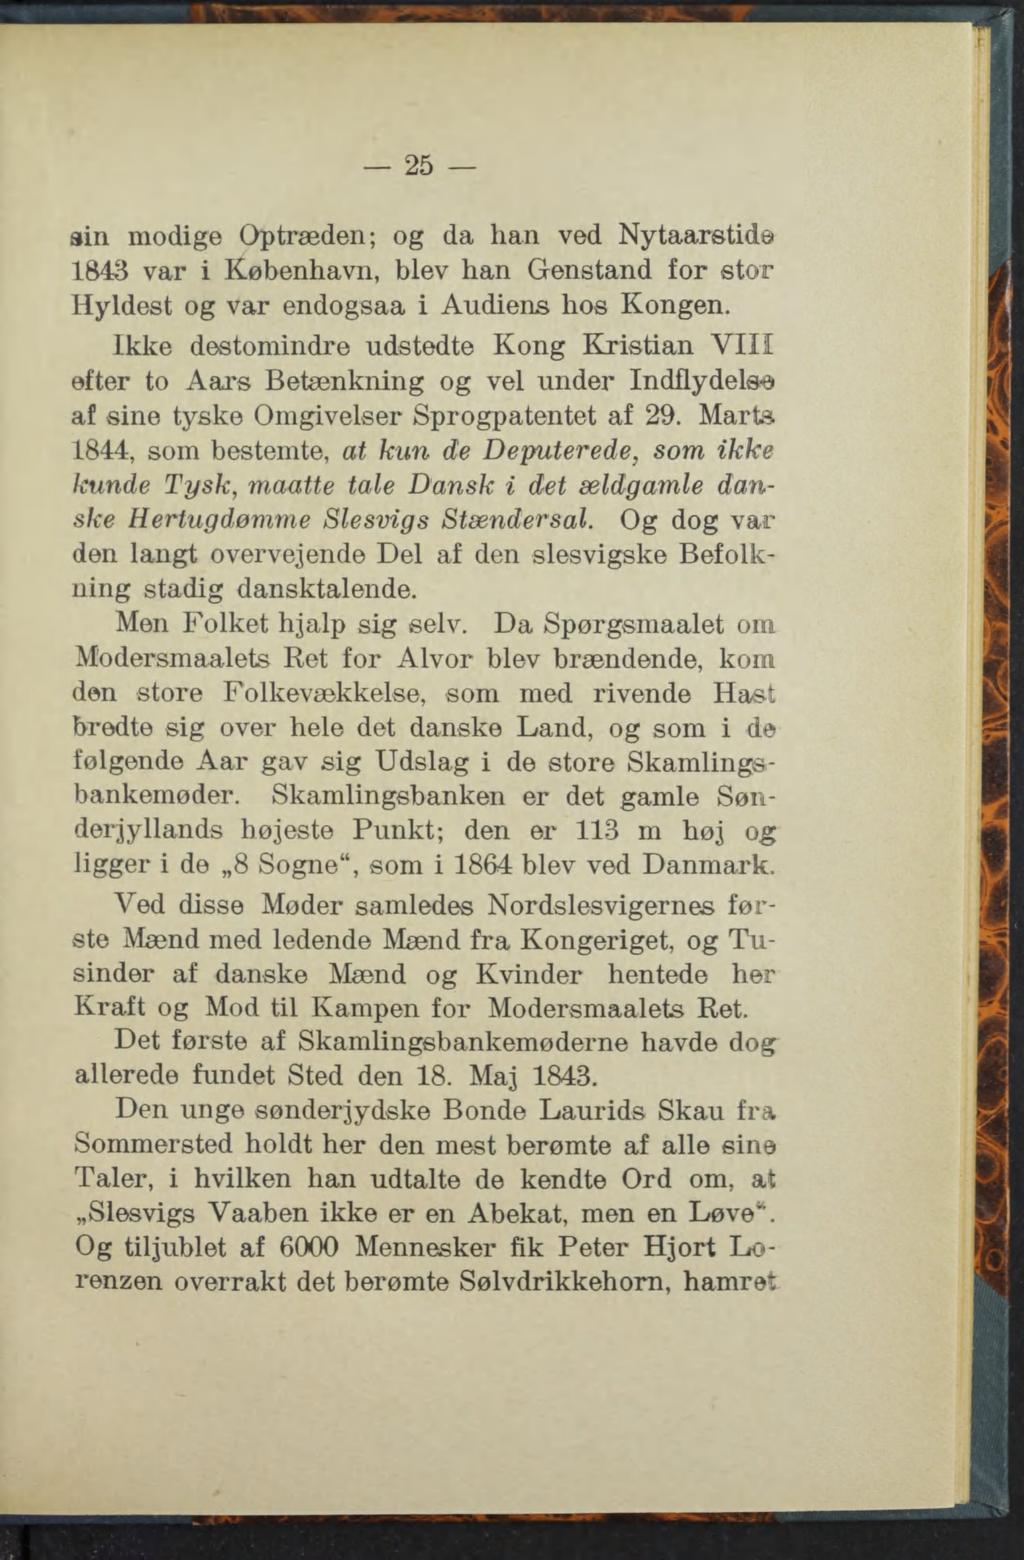 25 sin modige Optræden; og da han ved Nytaarstidd 1843 var i København, blev han Genstand for stor Hyldest og var endogsaa i Audiens hos Kongen.